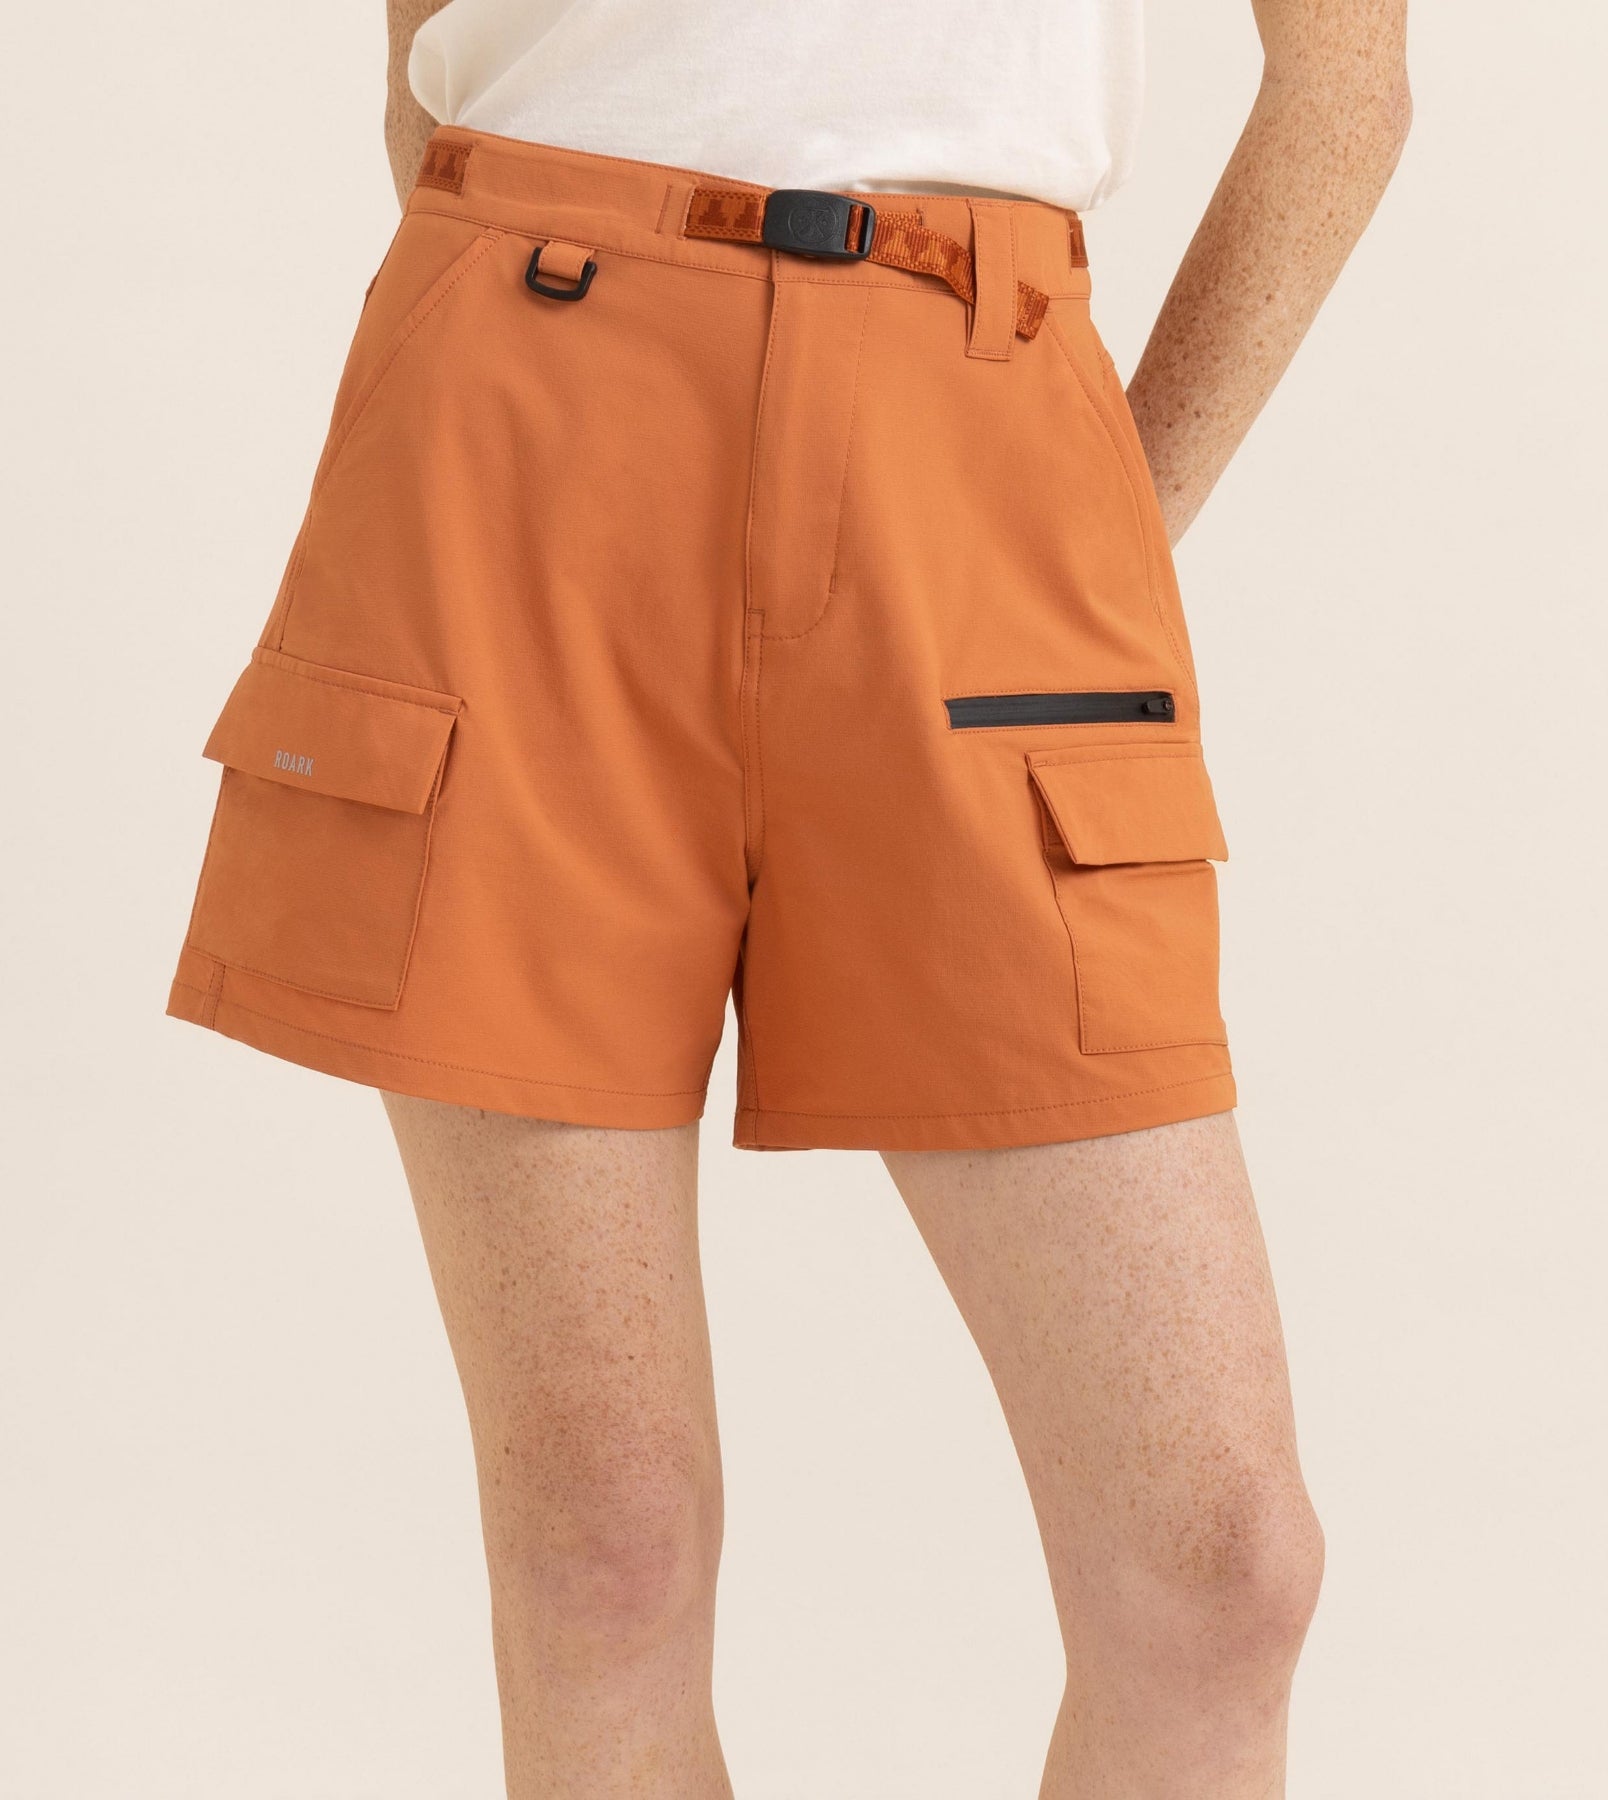 Canyon Shorts